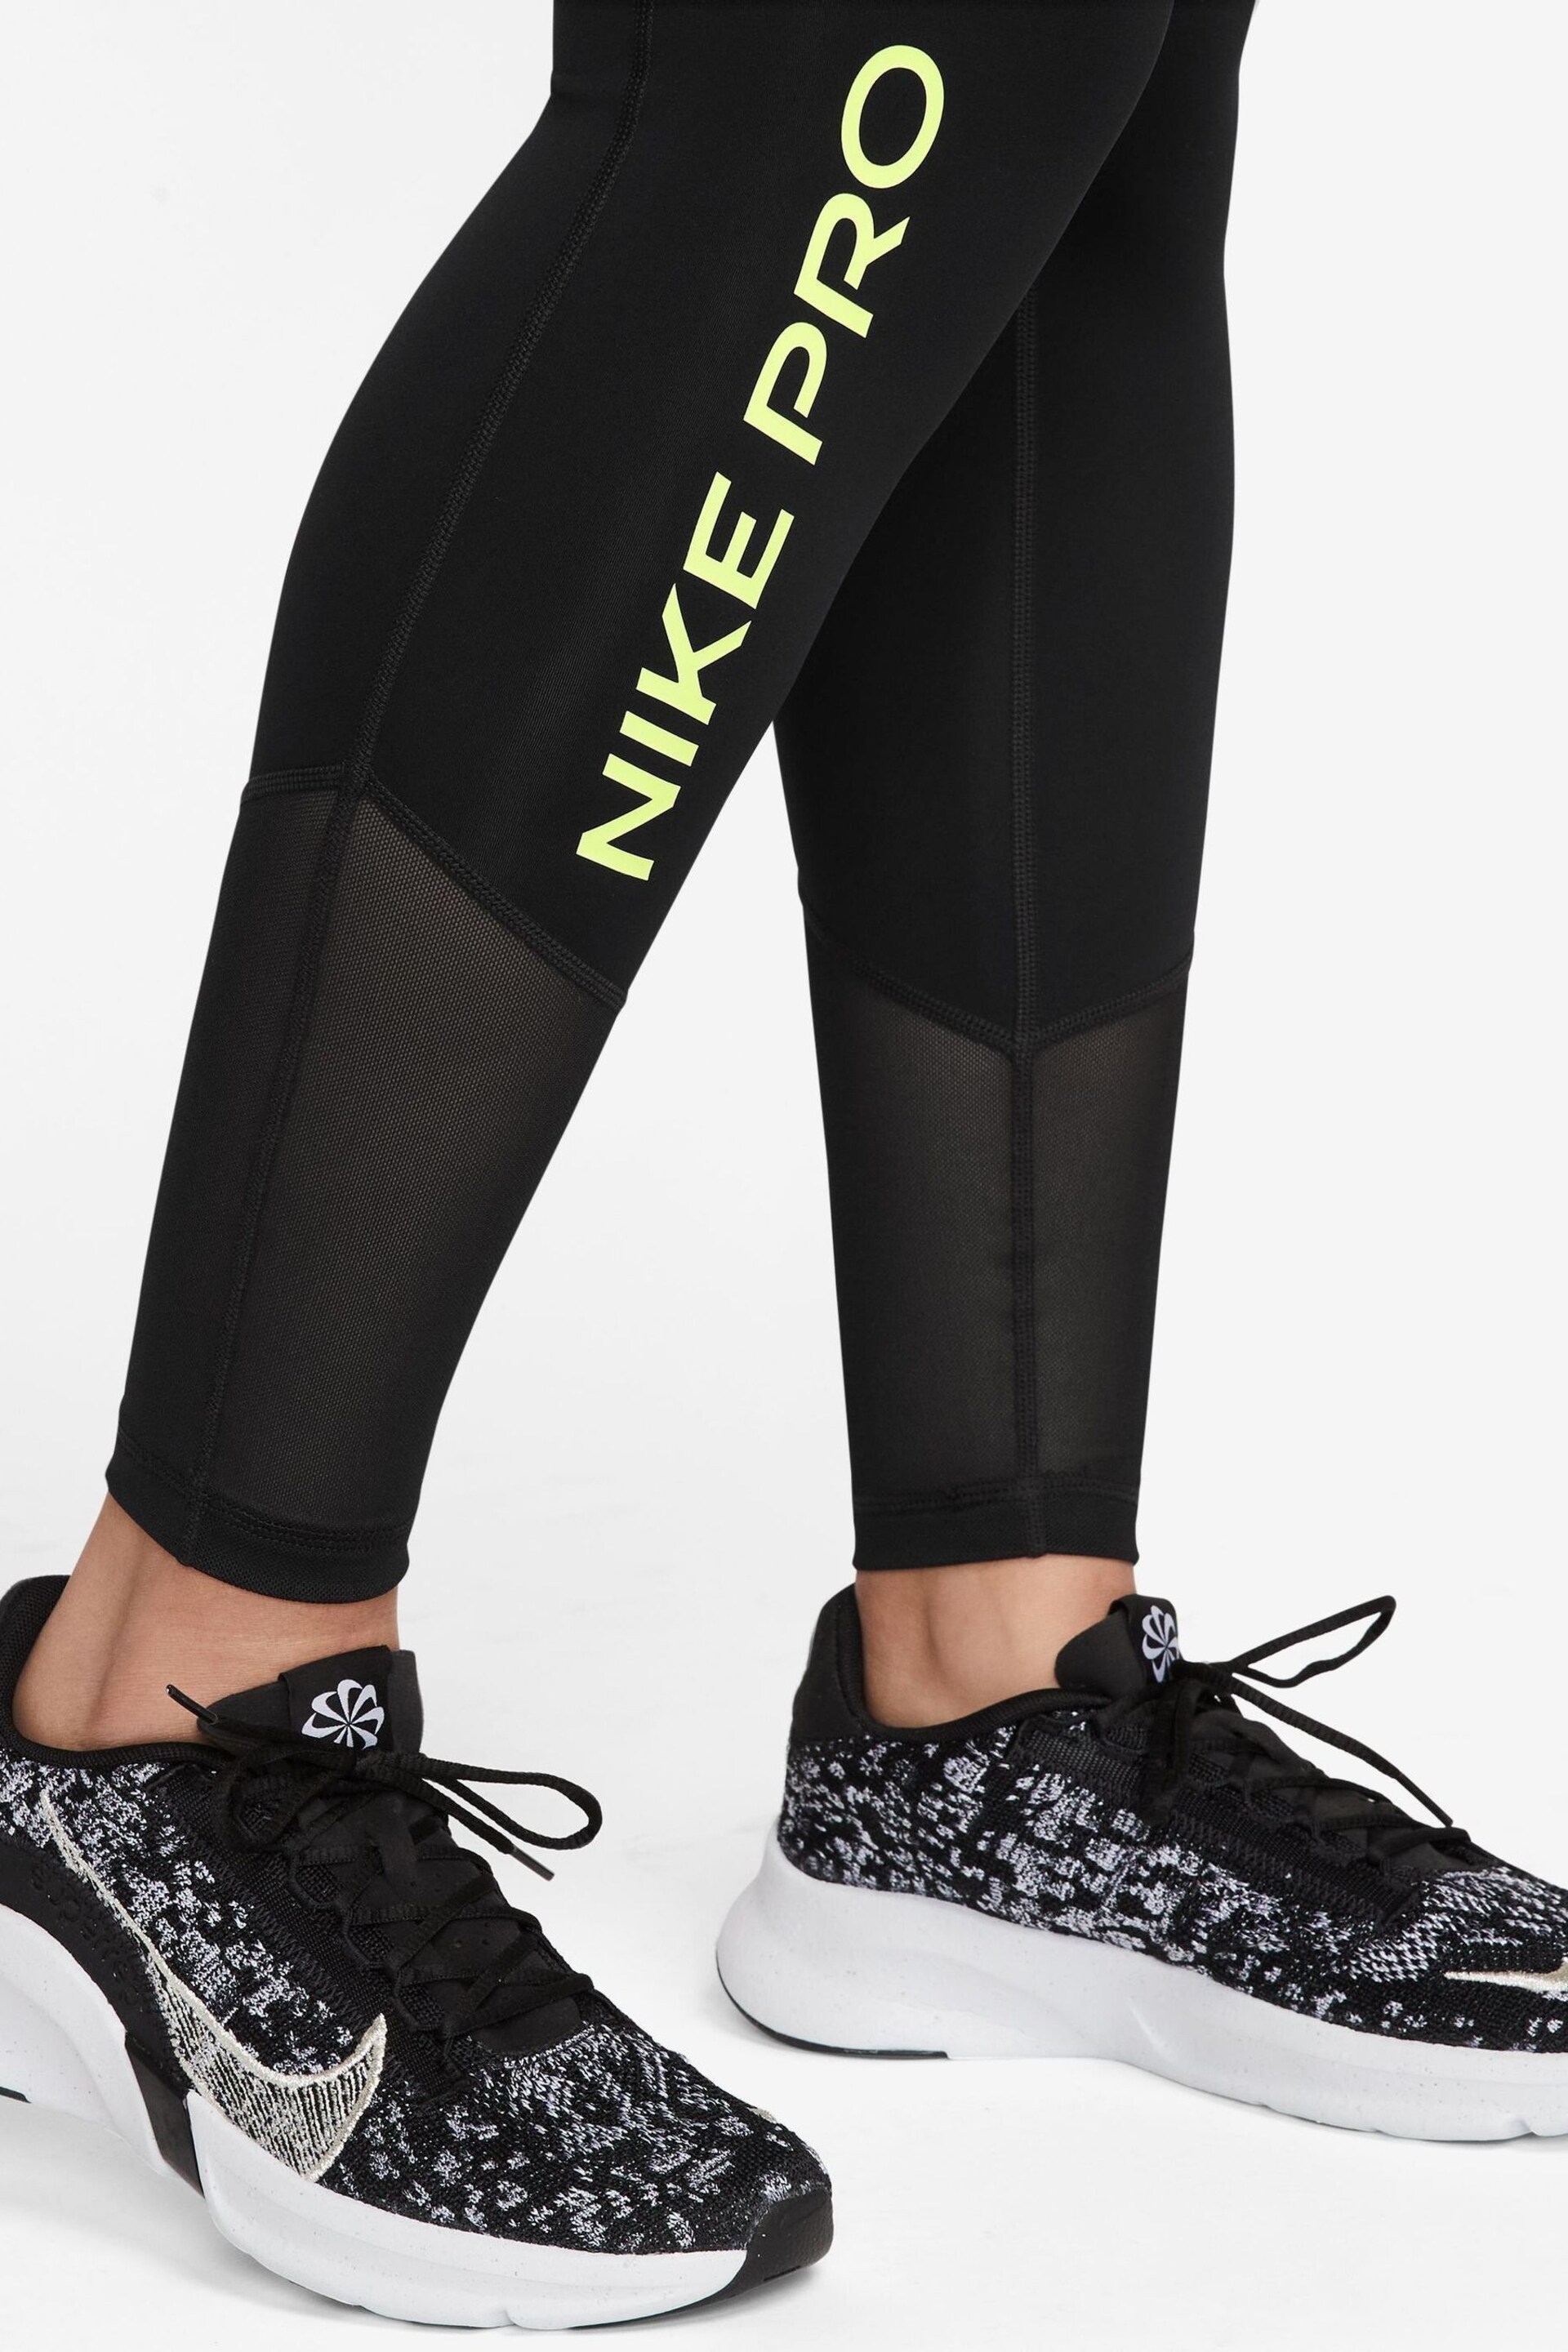 Nike Black Pro Mid-Rise Leggings - Image 3 of 3